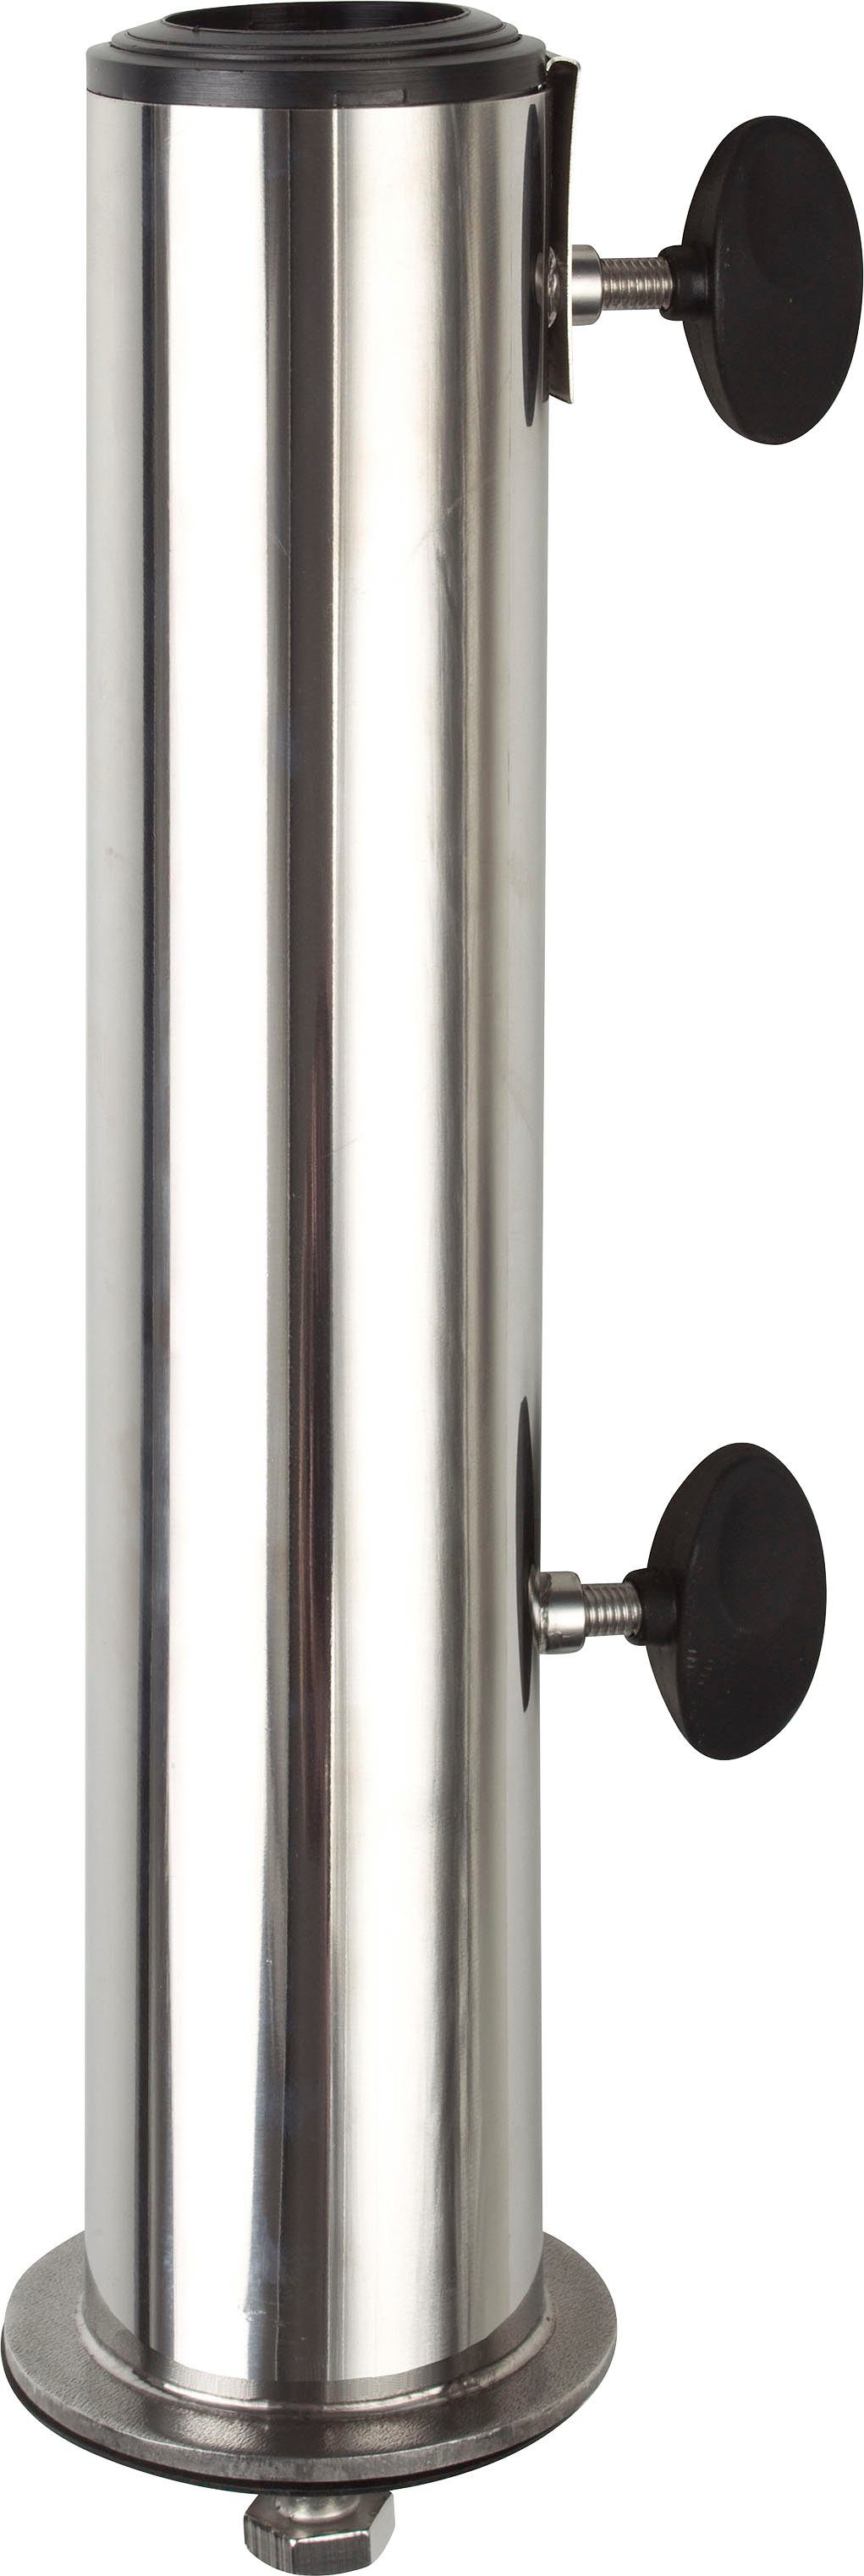 doppler® Schirmhalter, für Stöcke bis Ø 25 mm, 1 tlg.